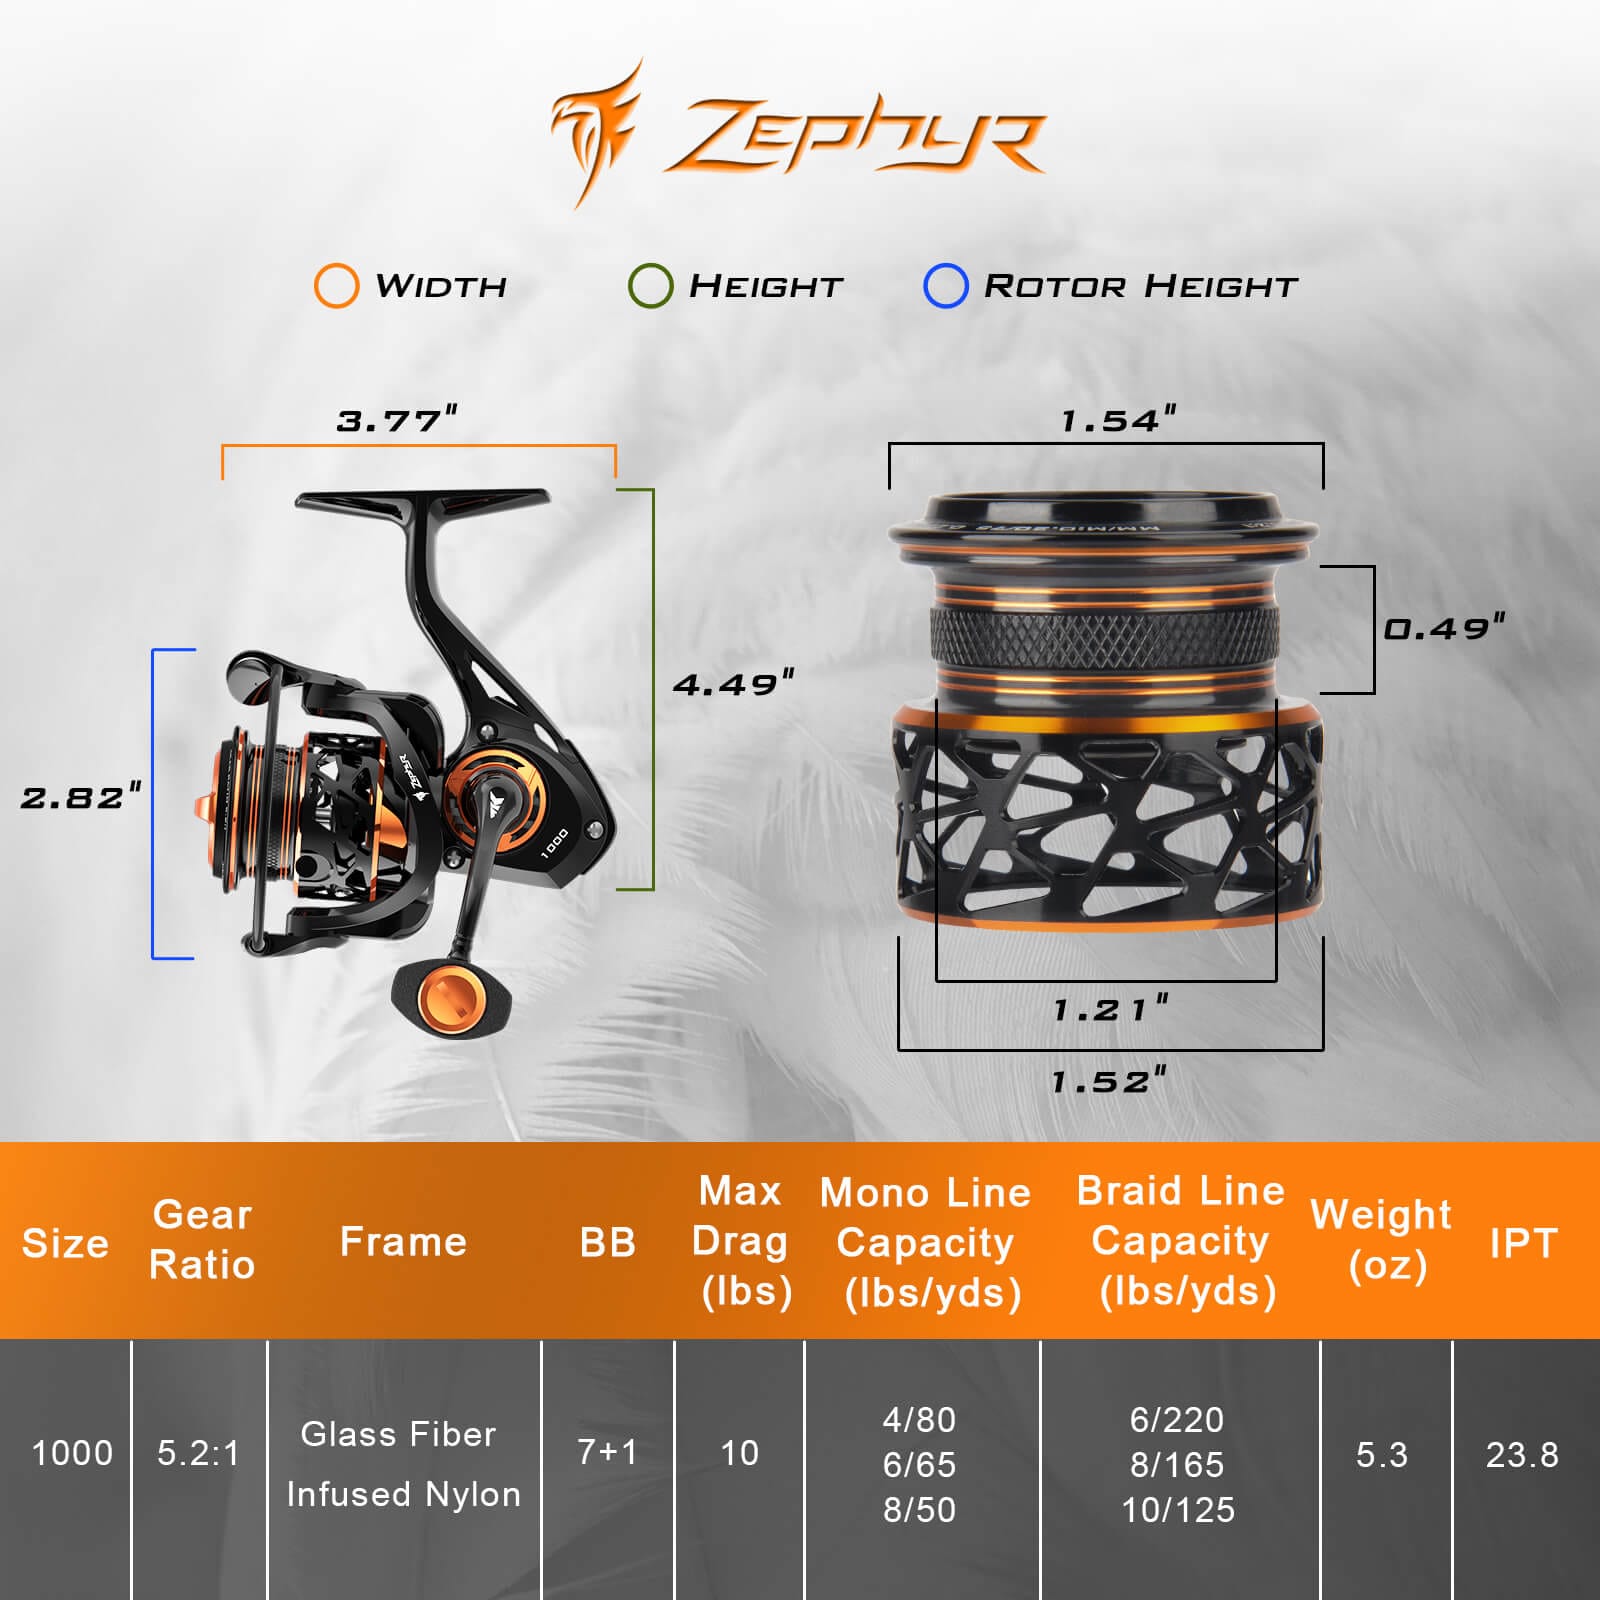 35kg Full Metal Kastking Zephyr Spinning Reel For Effective